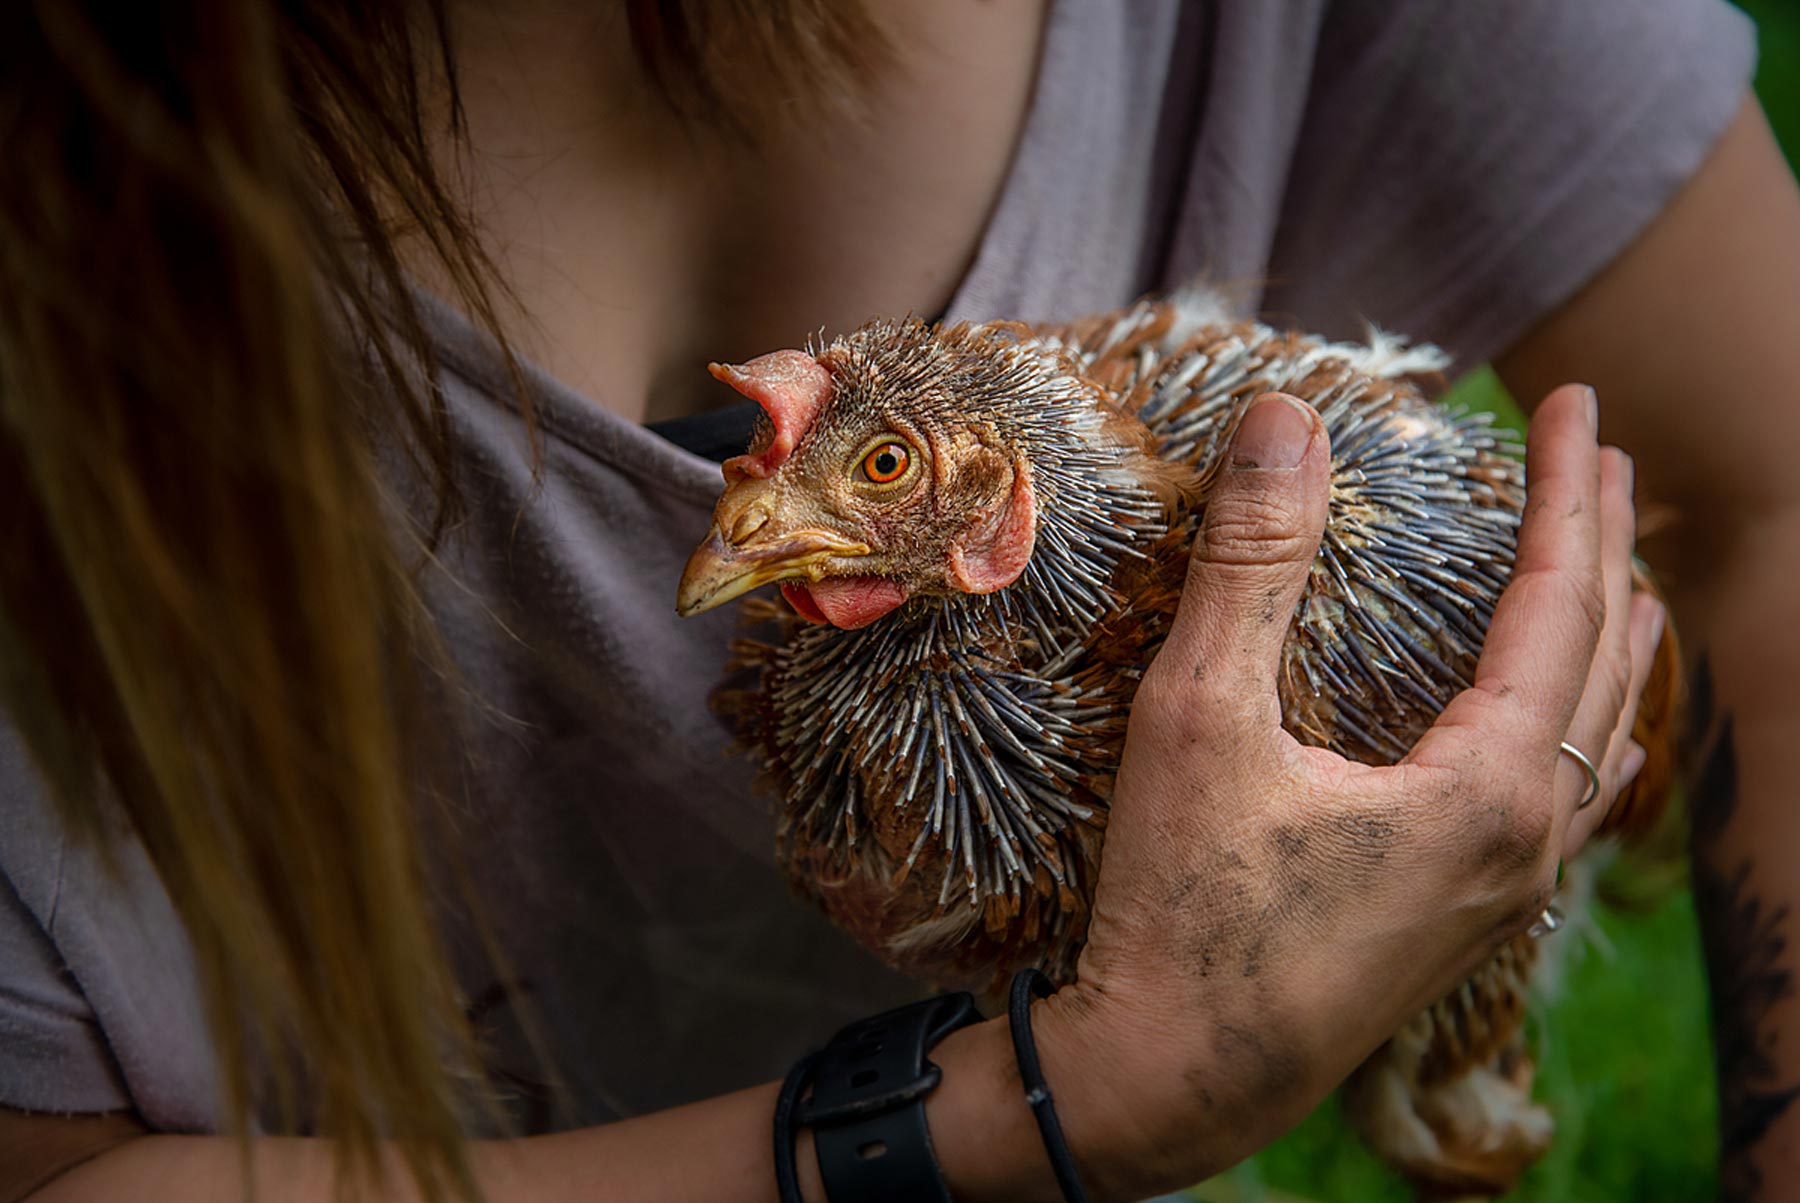 Zelda is a hen who as rescued by Pear Tree Farm.